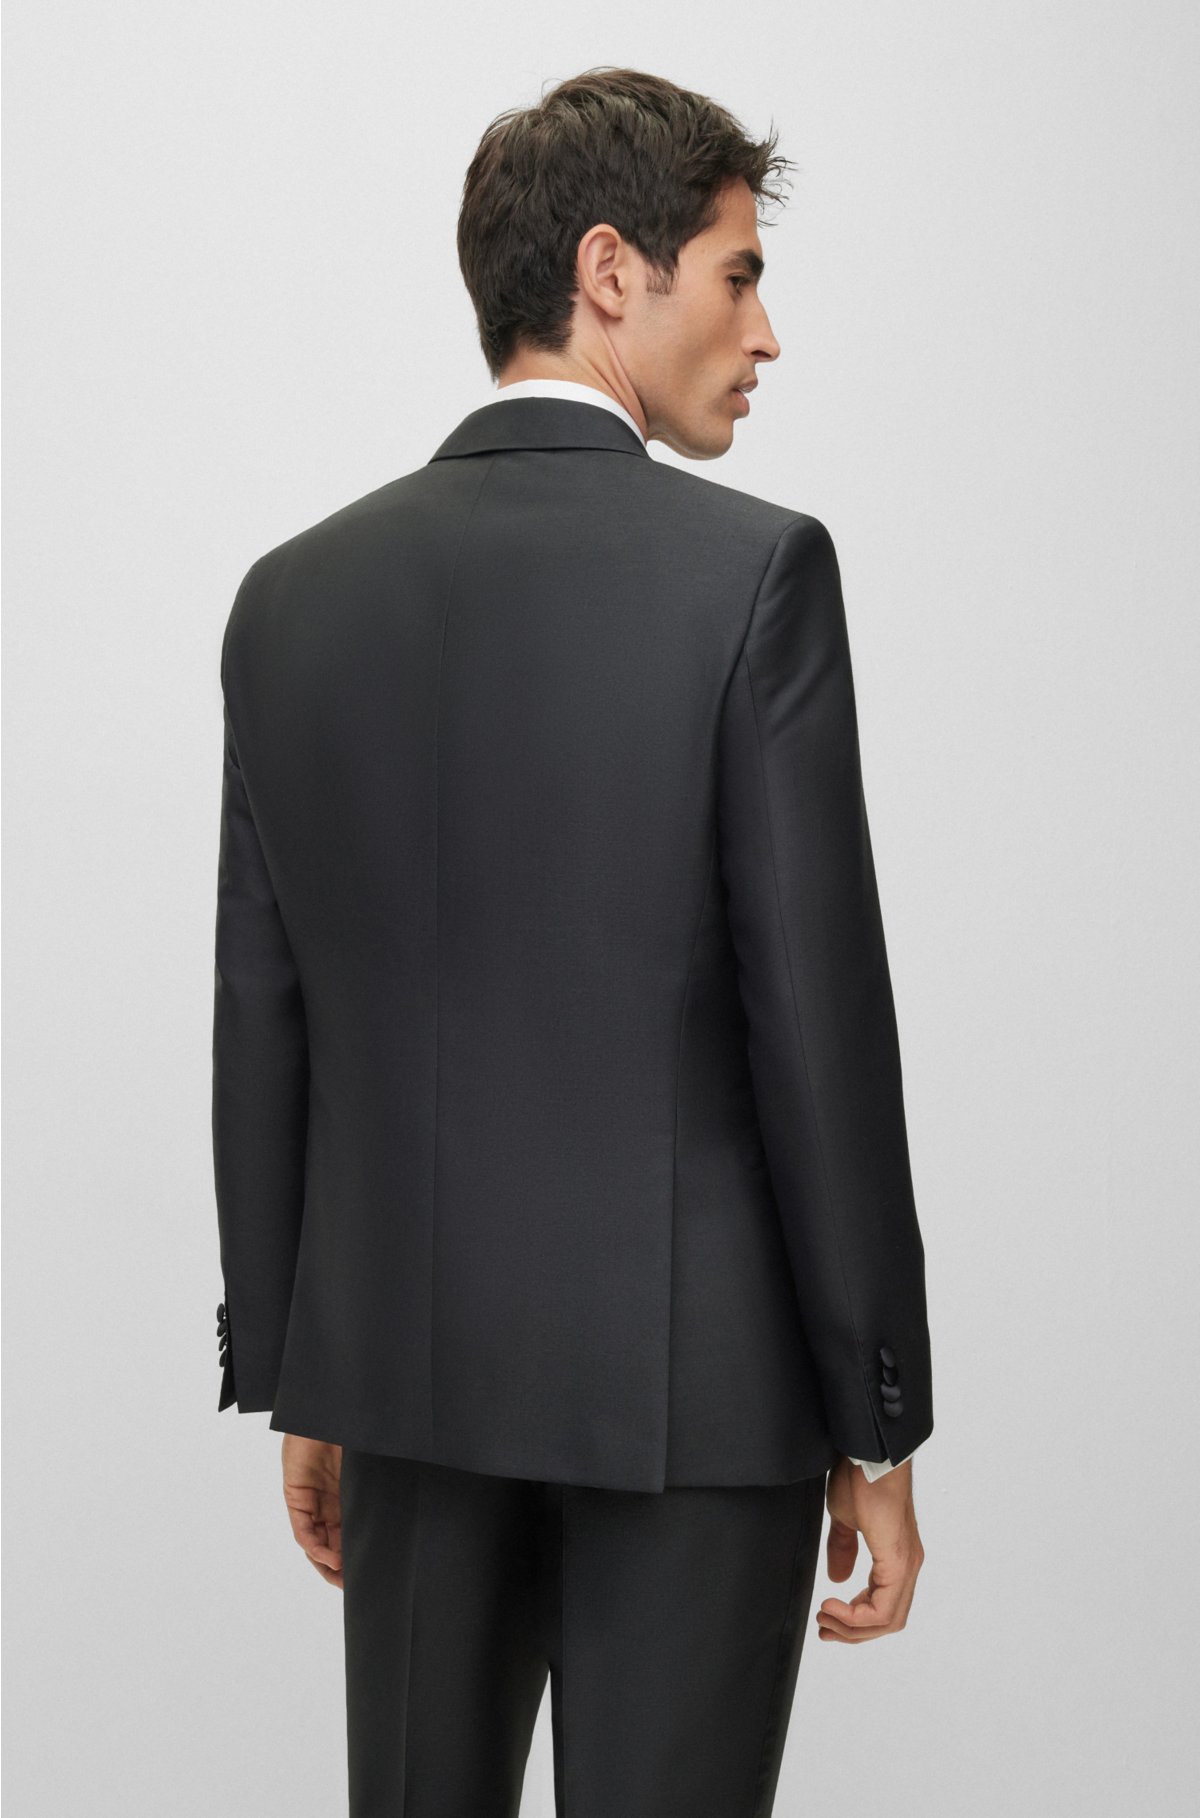 BOSS - Slim-fit tuxedo suit in a melange wool blend